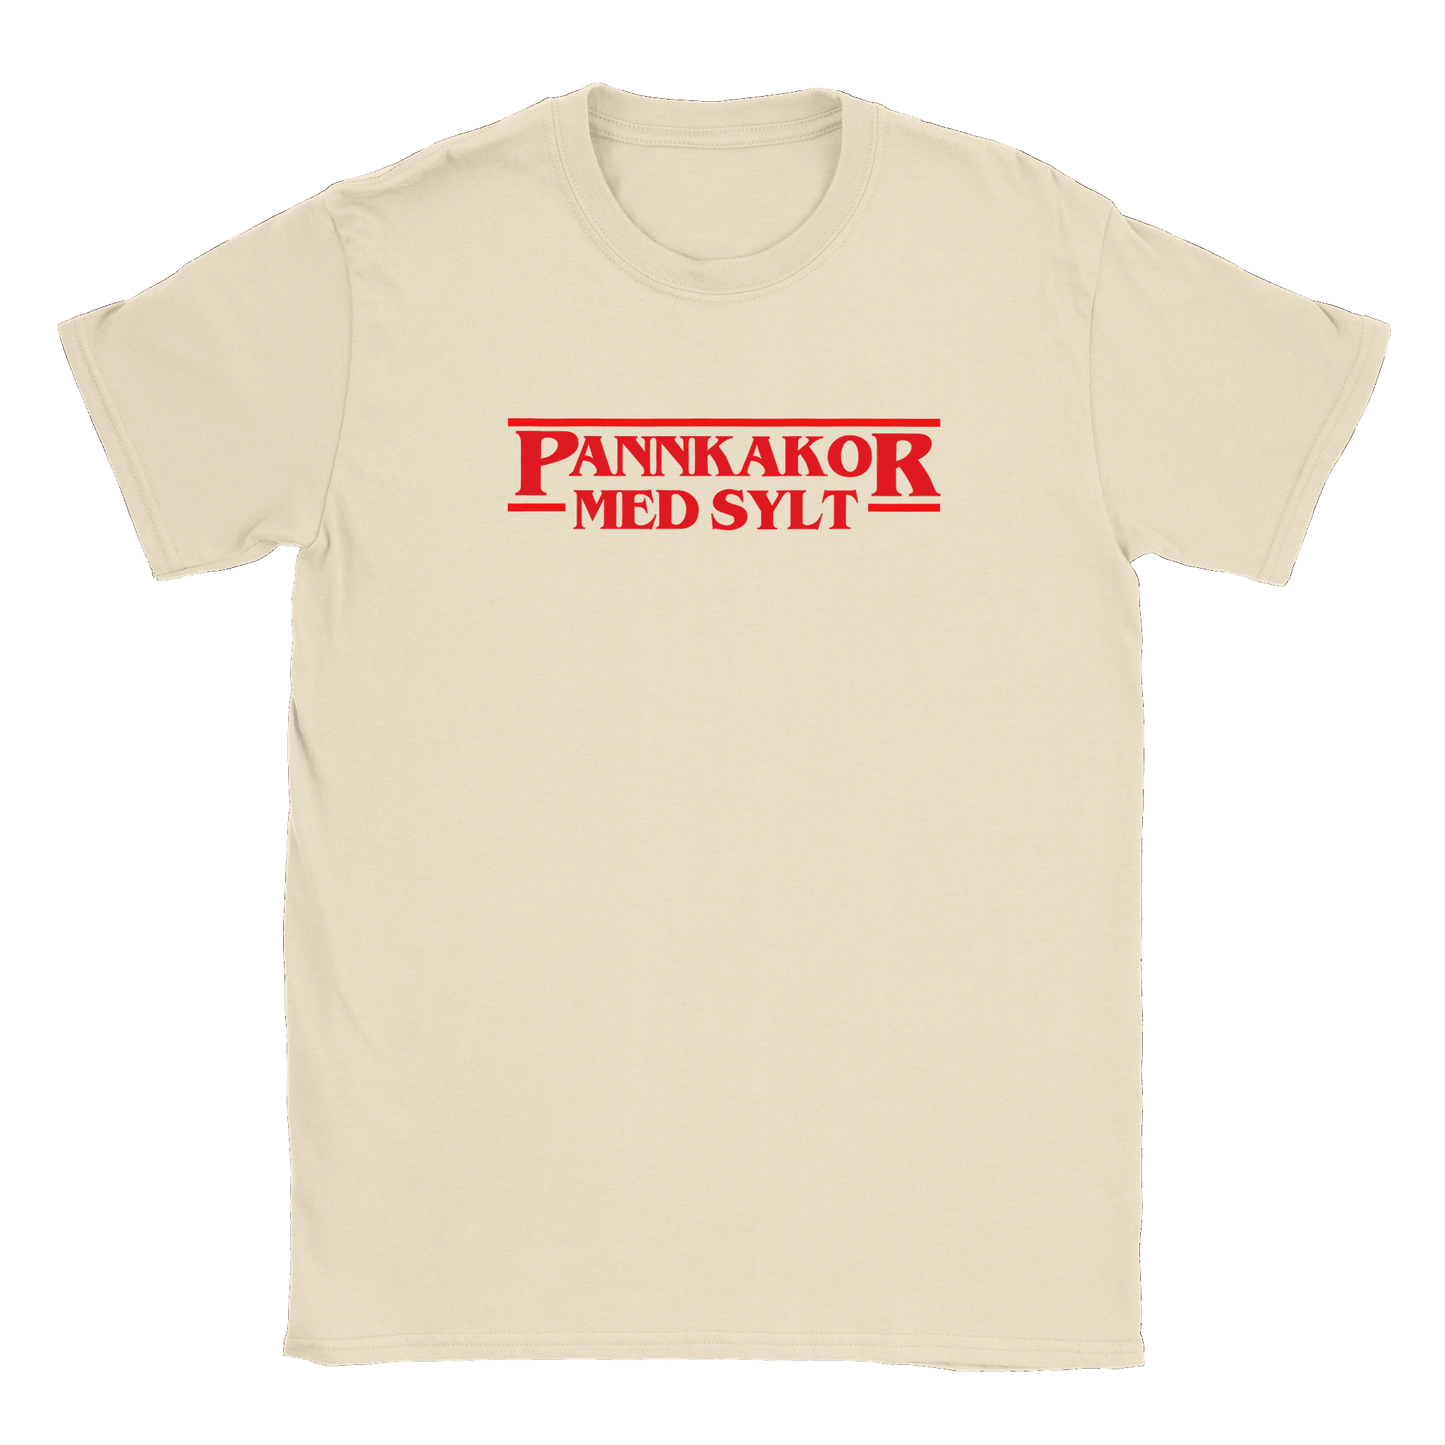 Pannkakor med sylt - T-shirt Natural